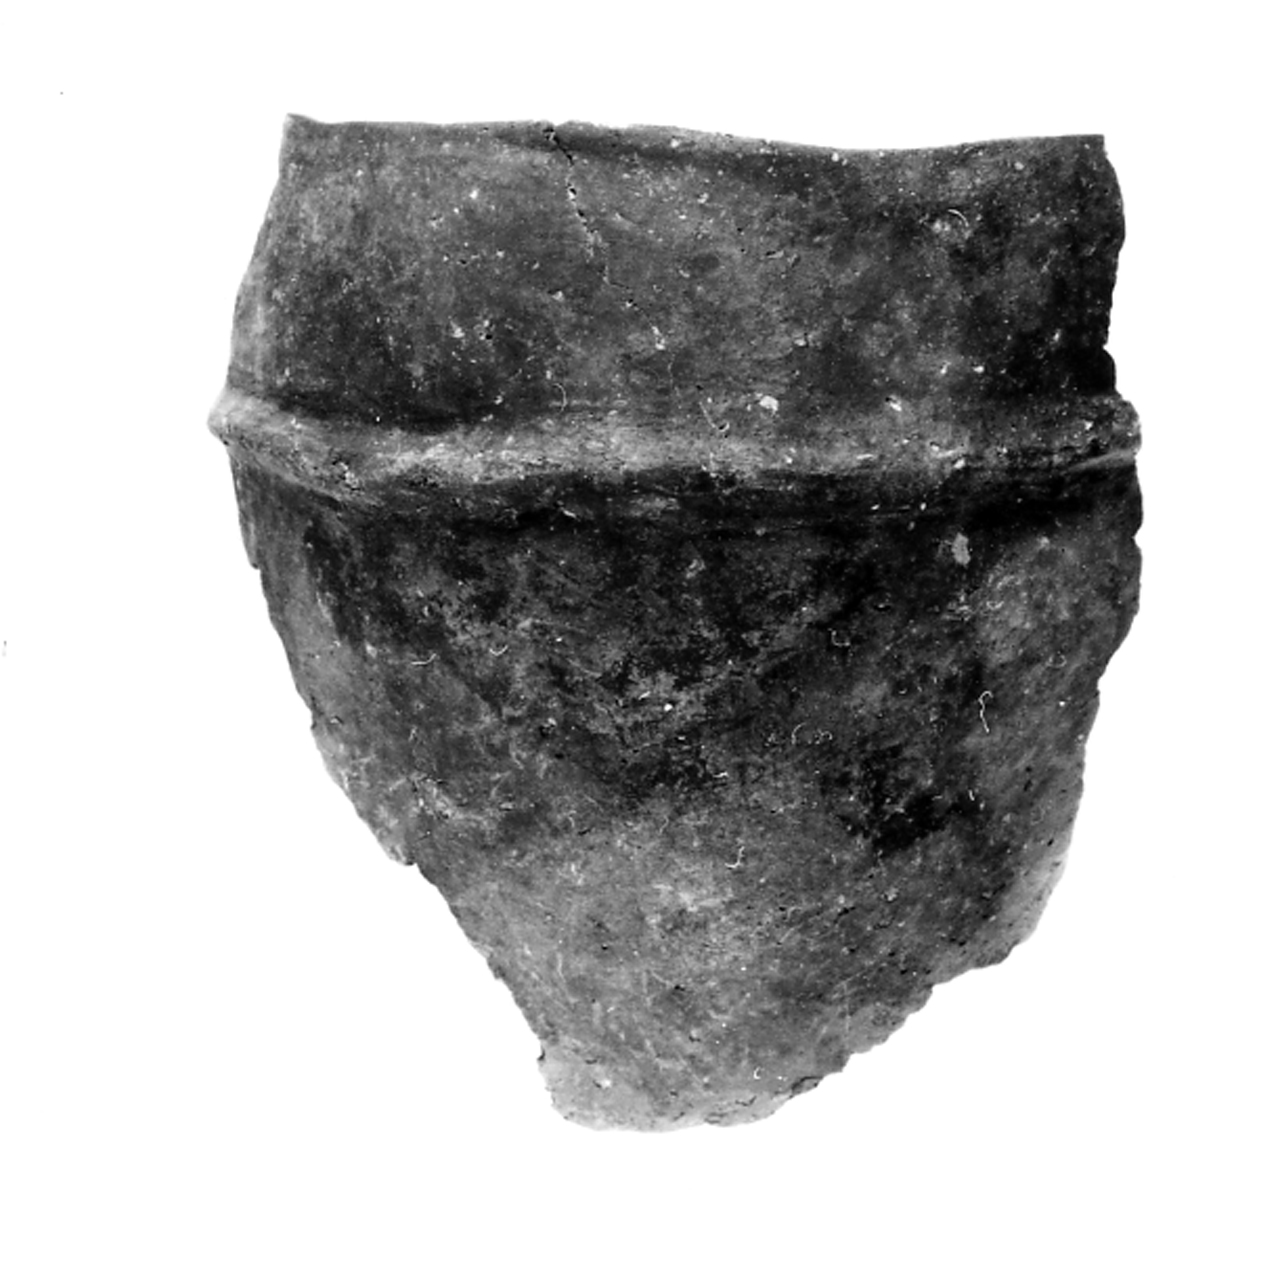 dolio ovoide cordonato - ambito berico-euganeo (secc. XIII/ XII a.C)